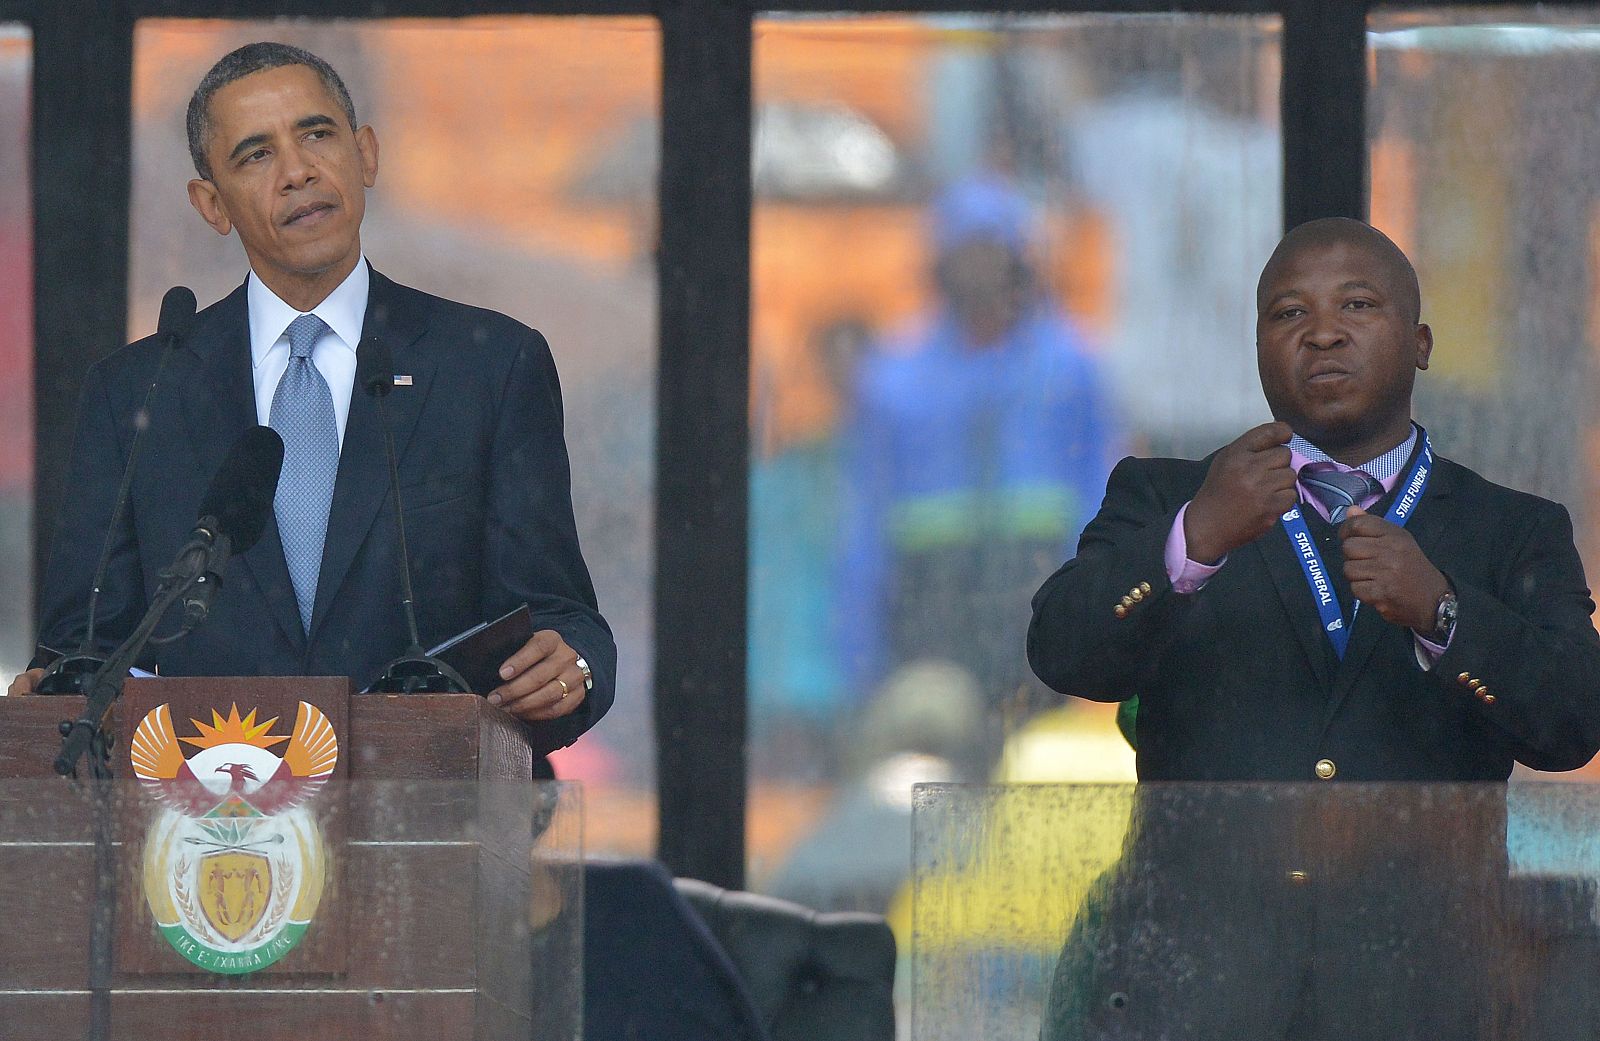 El falso intérprete gesticula durante la intervención de Obama